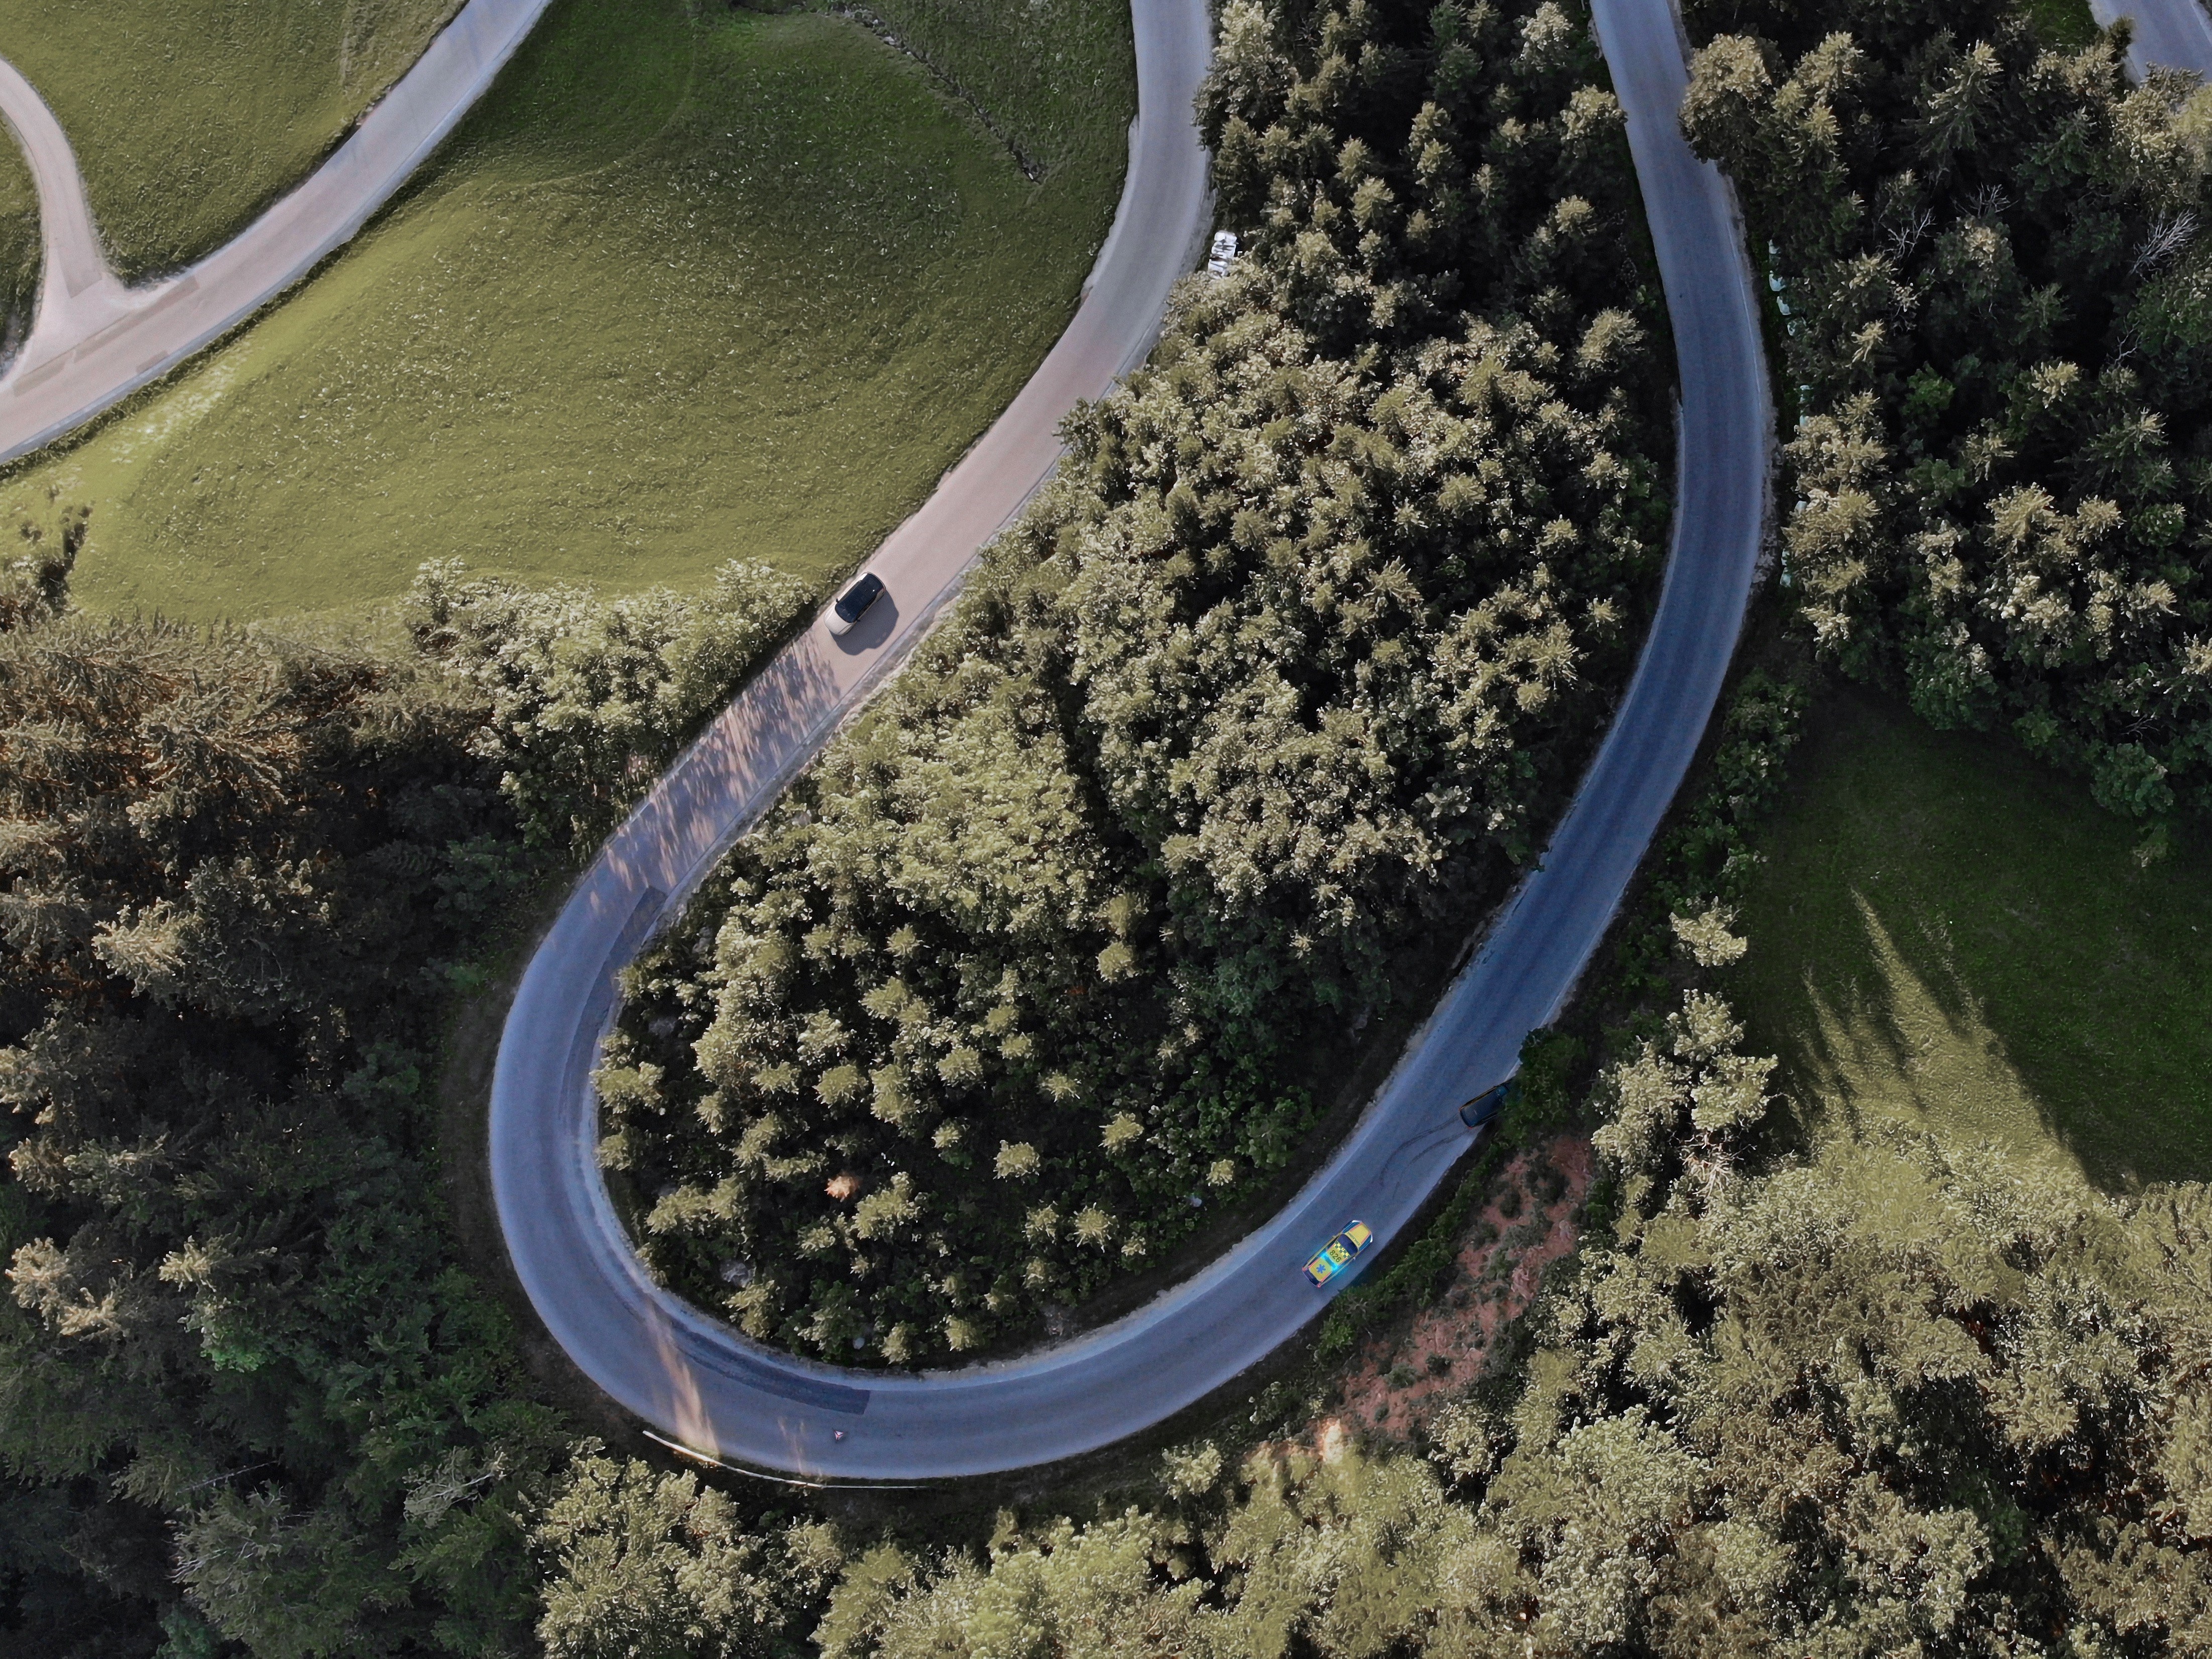 Technologie propojené bezpečnosti, se kterou si společnost Volvo Cars připsala průmyslové prvenství, nyní může upozornit řidiče na dopravní nehodu na cestě před nimi